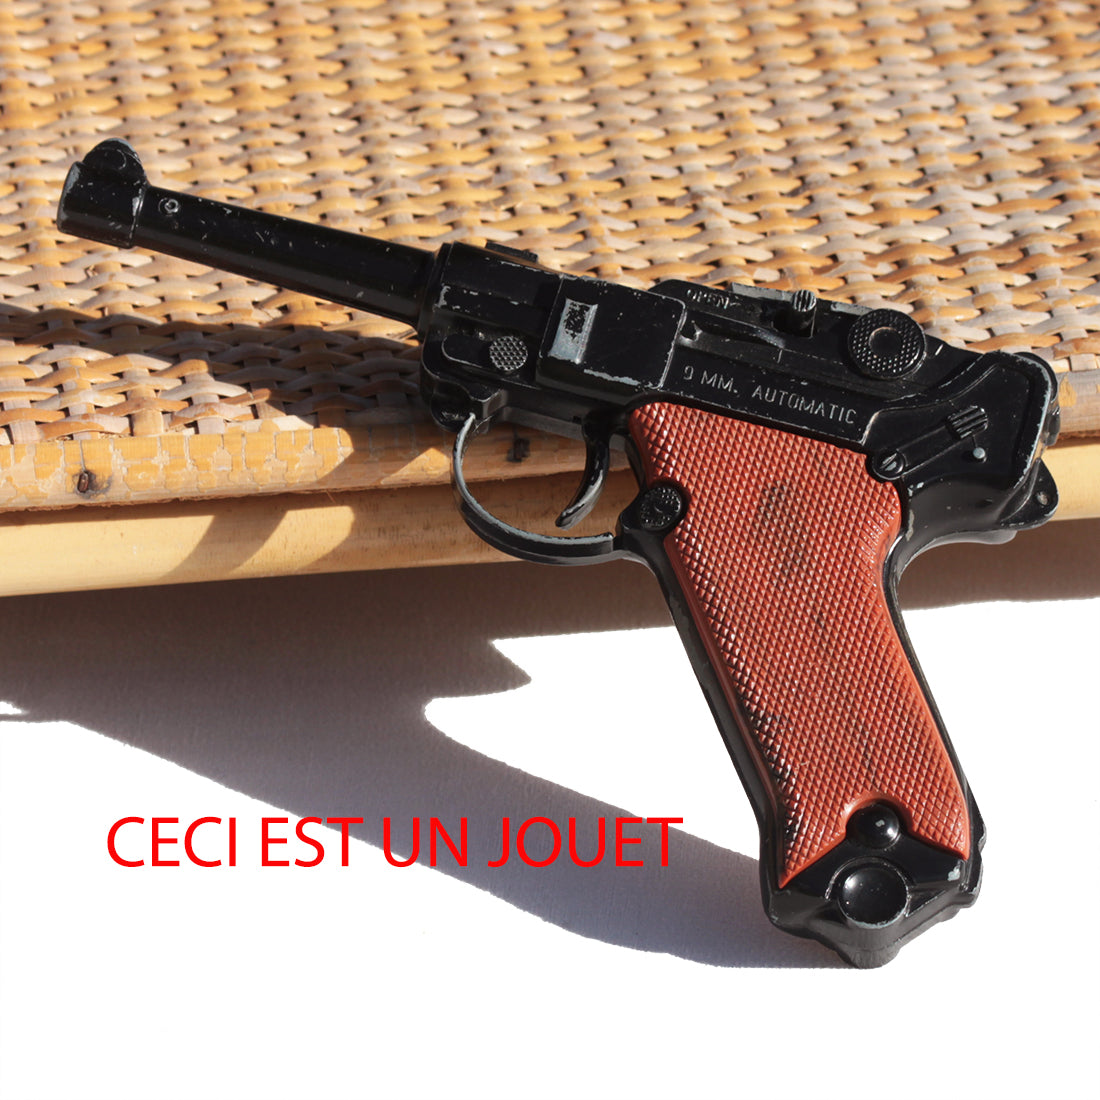 Old toy Lone Star primer pistol, Luger model – La Roue du Passé